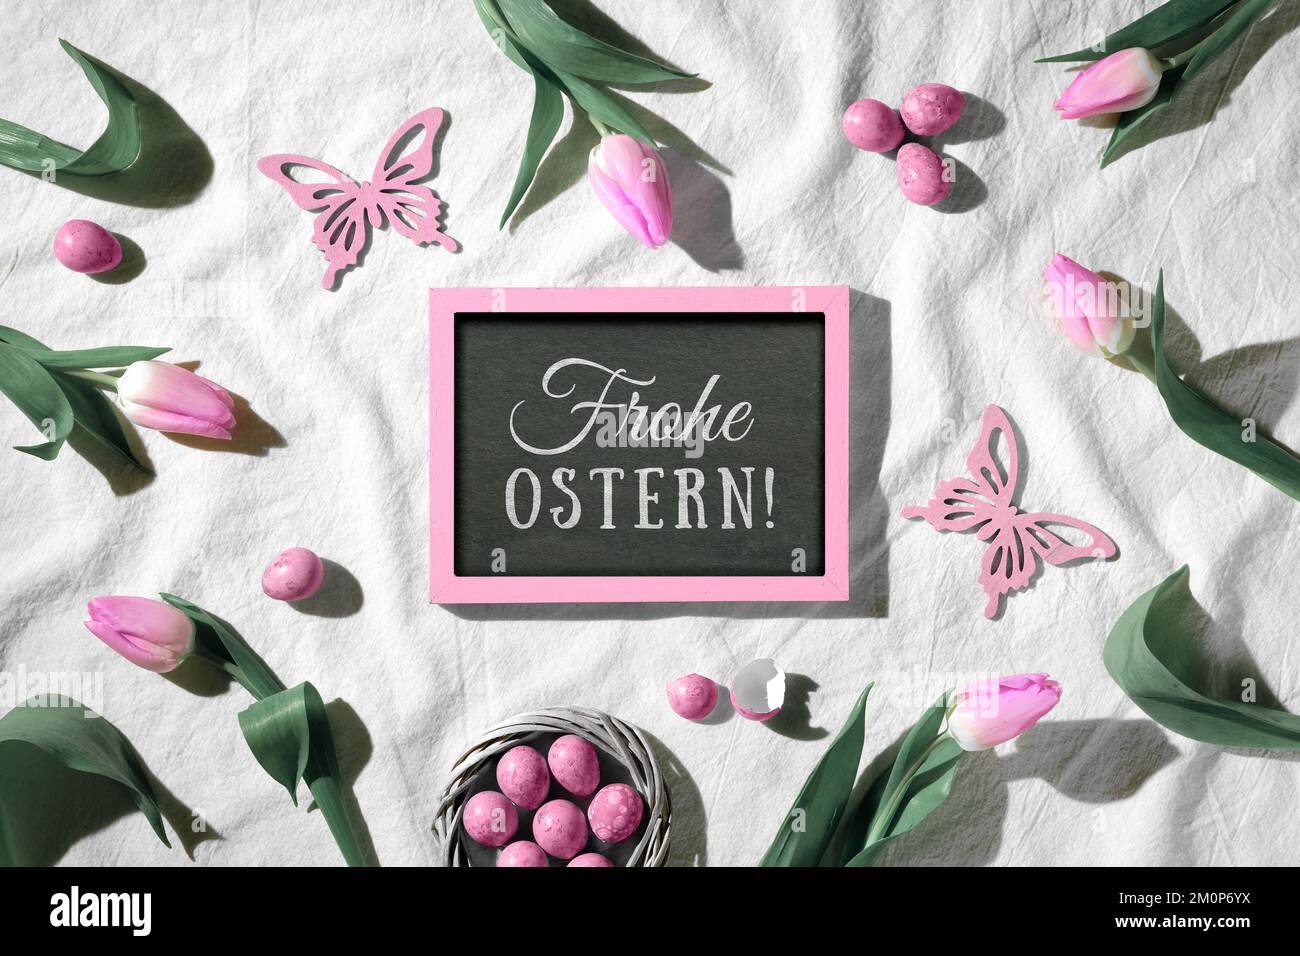 Ostern-Hintergrund. Dekorierter Hintergrund mit Tafel. Der Text Frohe Ostern bedeutet Happy Easter in deutscher Sprache. Rosa Tulpen, Holzschmetterlinge und Stockfoto